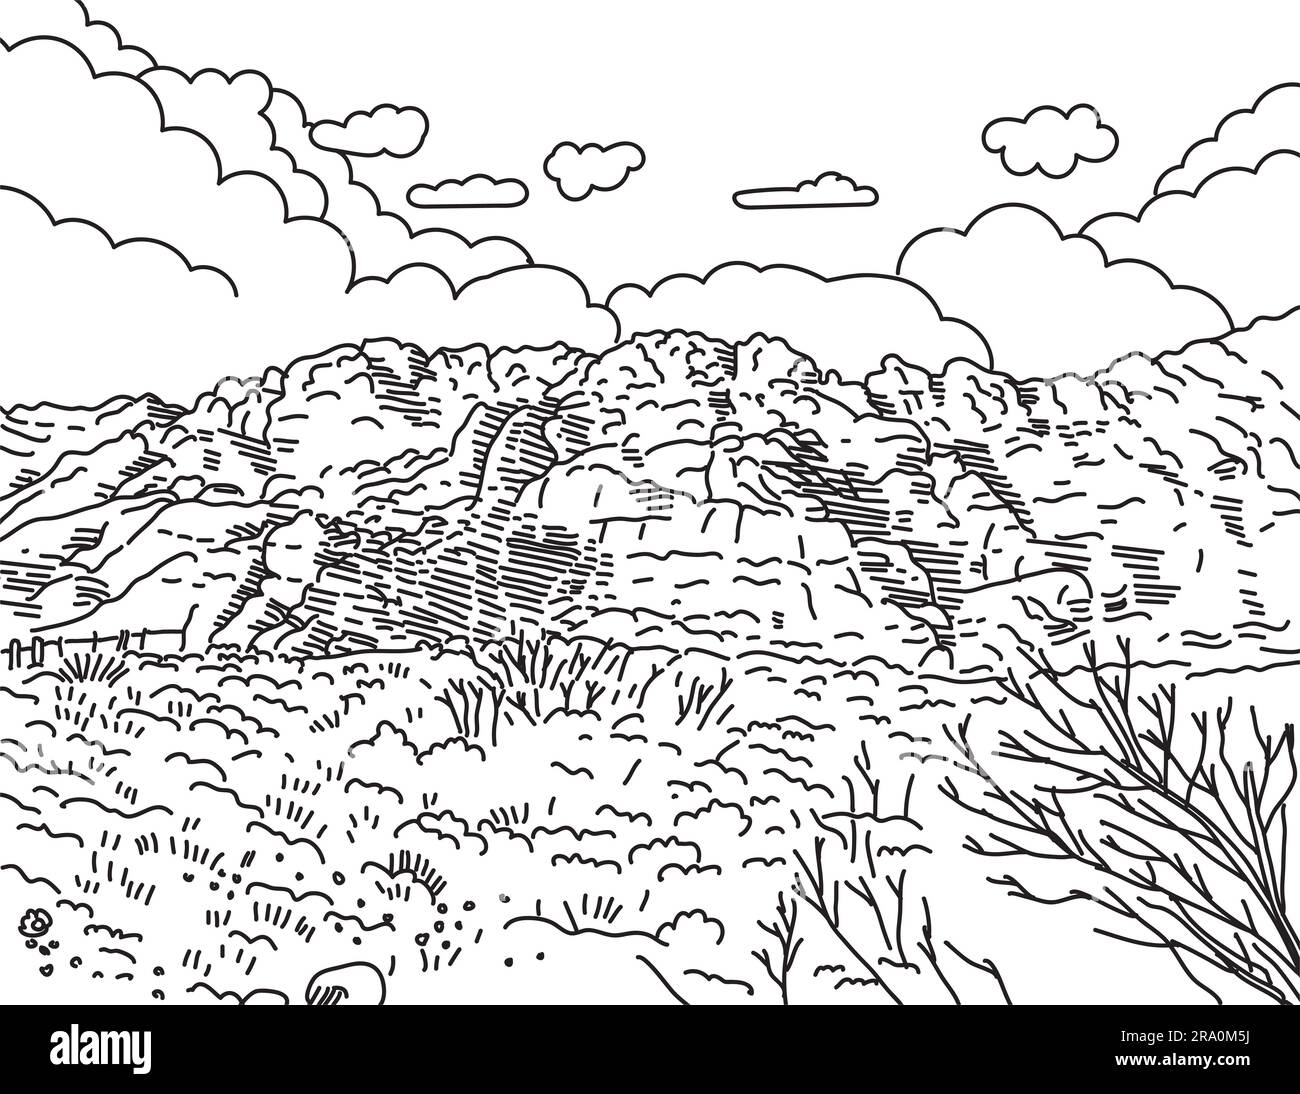 Illustrazione mono-line della Red Rock Canyon National Conservation area situata nella contea di Clark, Nevada, Stati Uniti, realizzata in arte monolina in blac Foto Stock